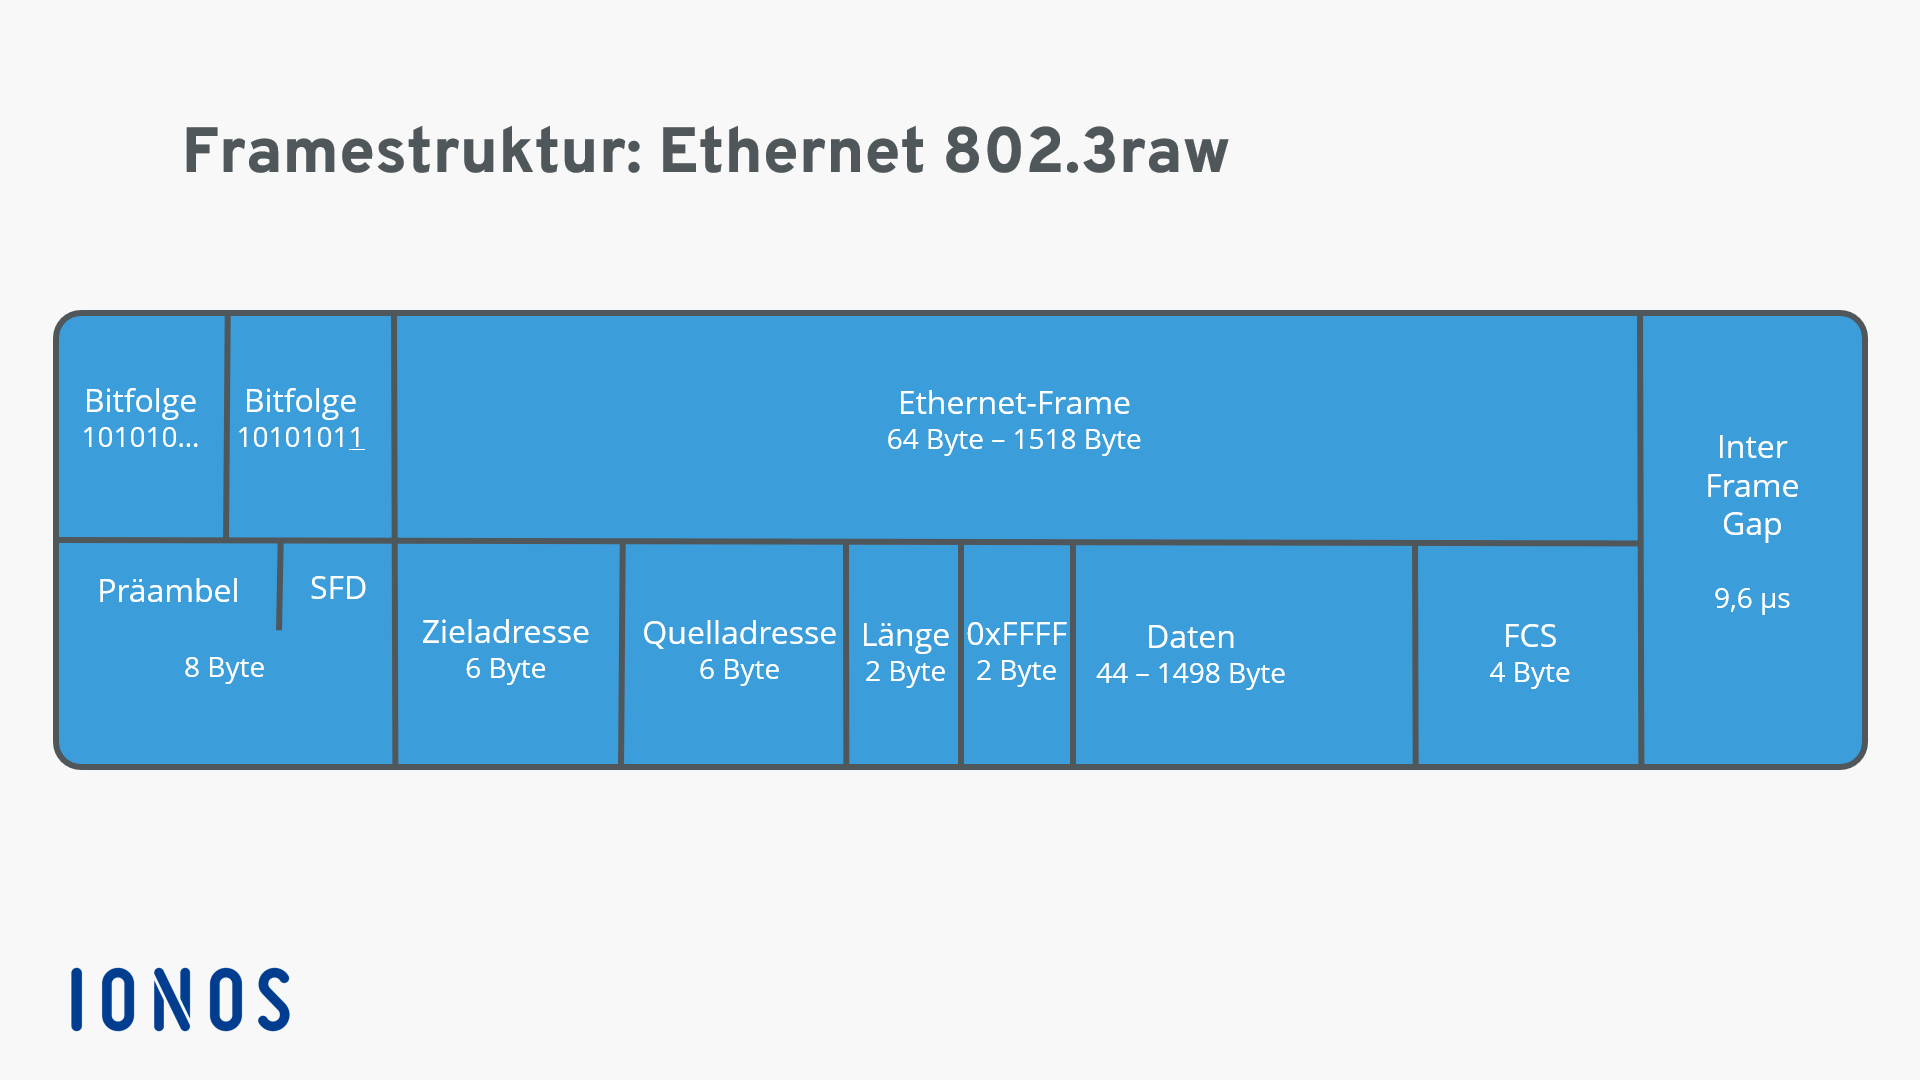 Darstellung einer Ethernet 802.3raw-Framestruktur